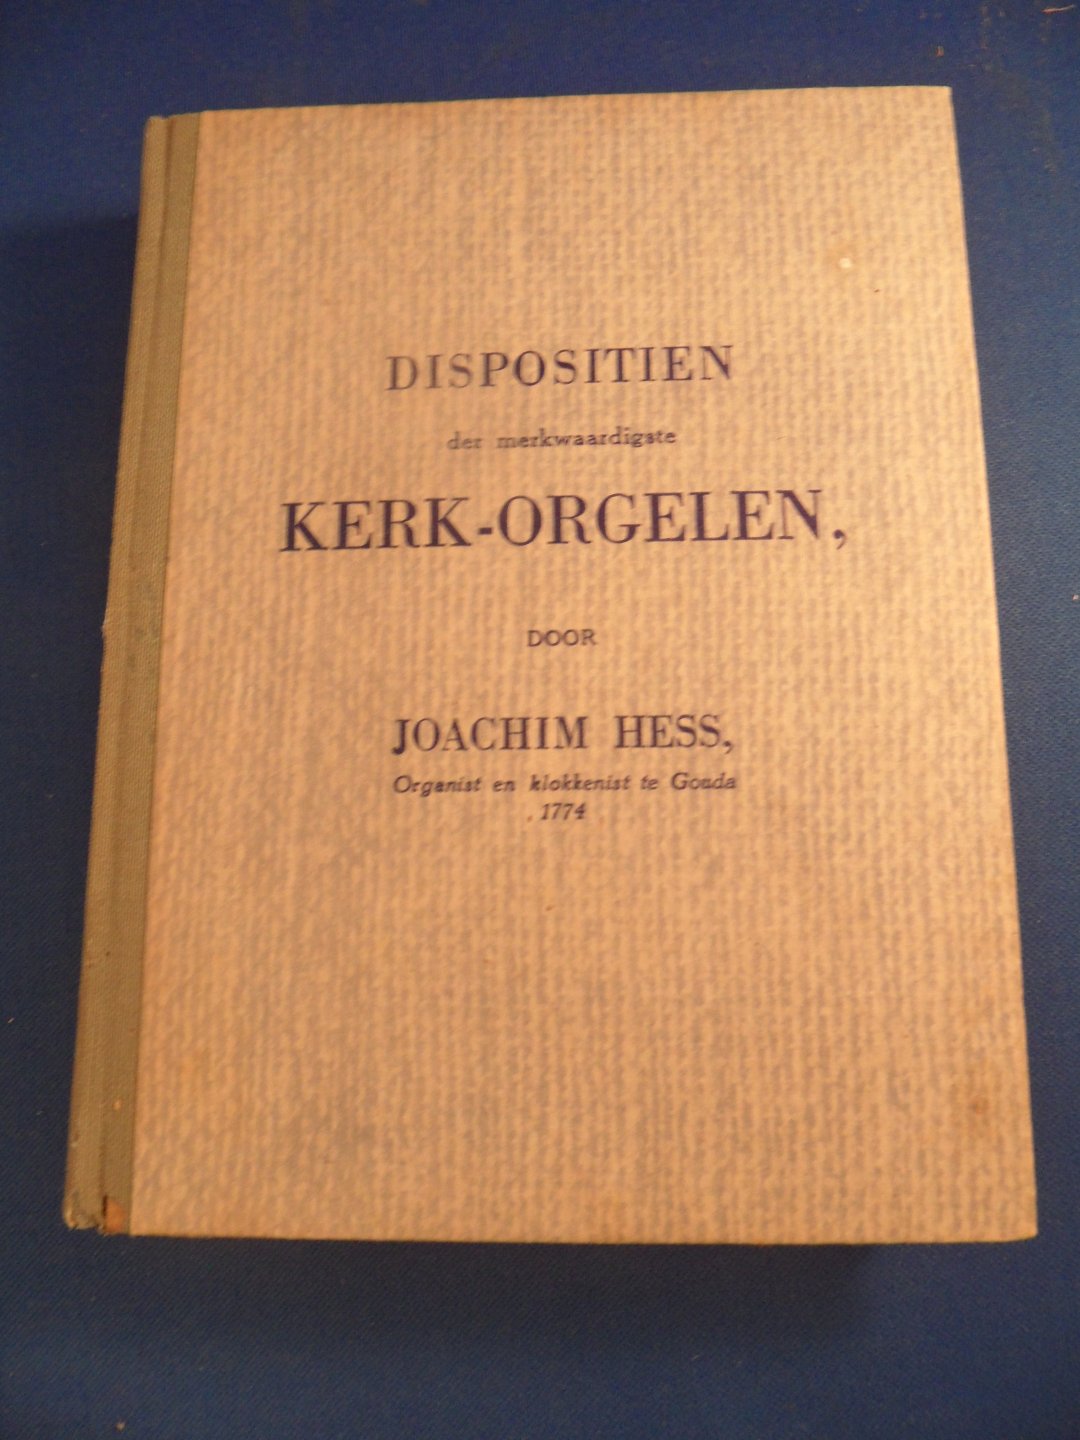 Hess, Joachim - Dispositien der merkwaardigste kerk-orgelen welke in de zeven Vereenigde Provincien als mede in Duytsland en Elders aangetroffen worden